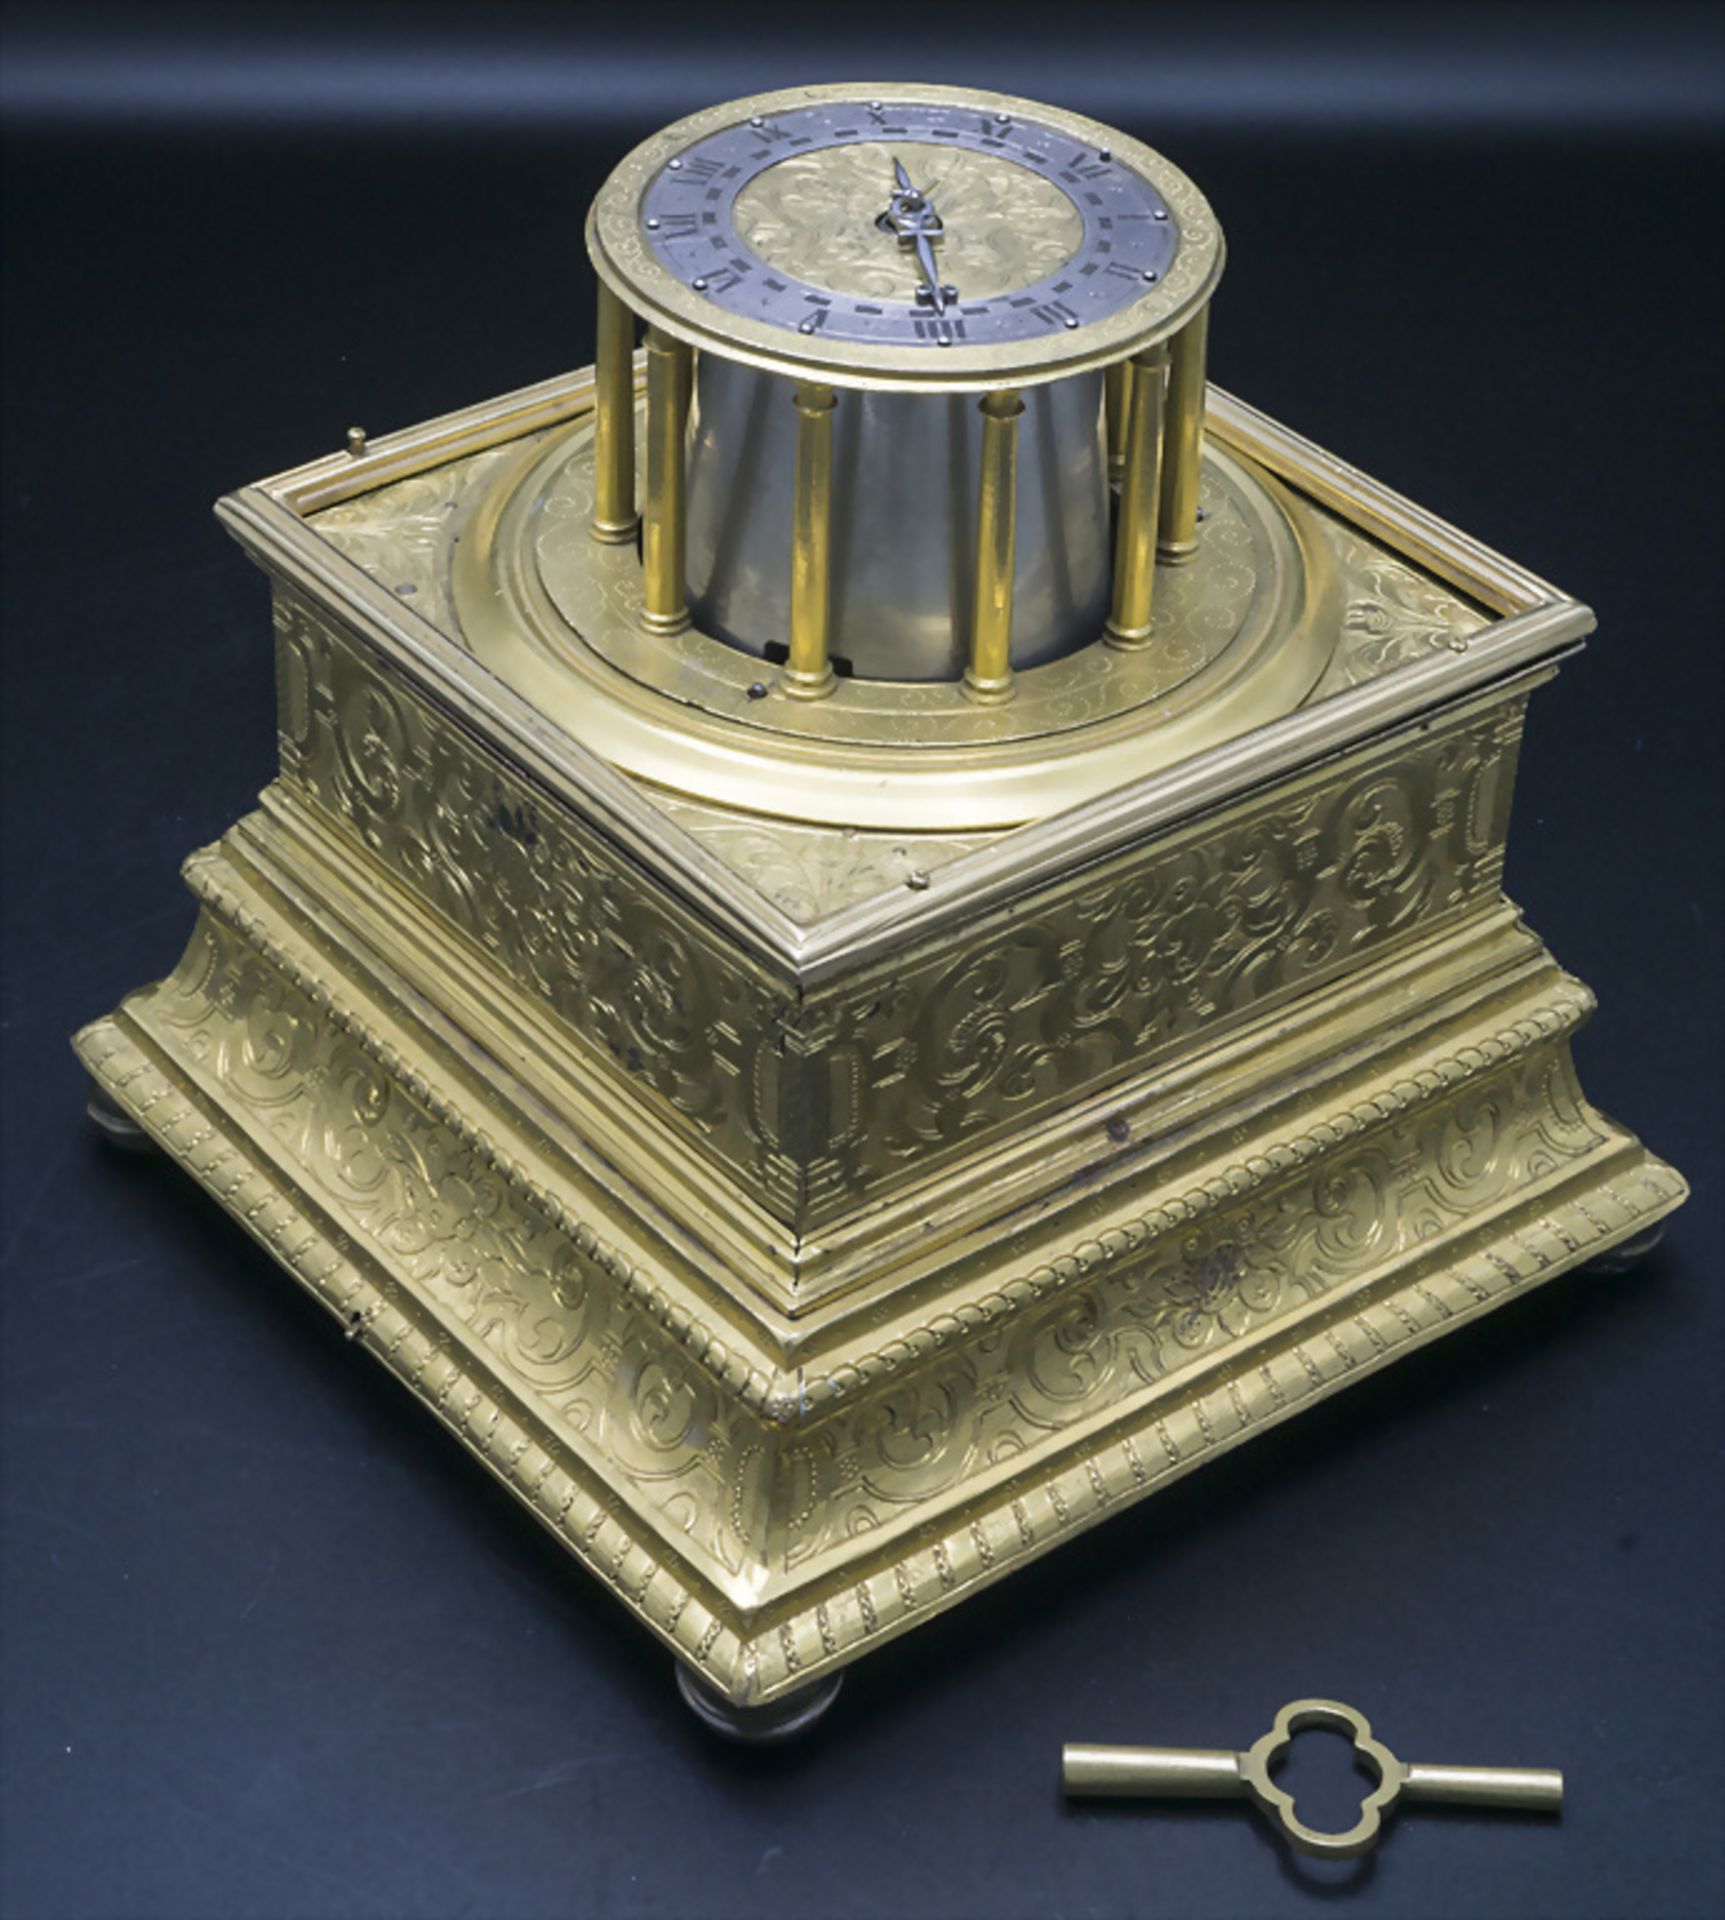 Tischuhr / A table clock, süddeutsch, um 1620 - Image 2 of 17